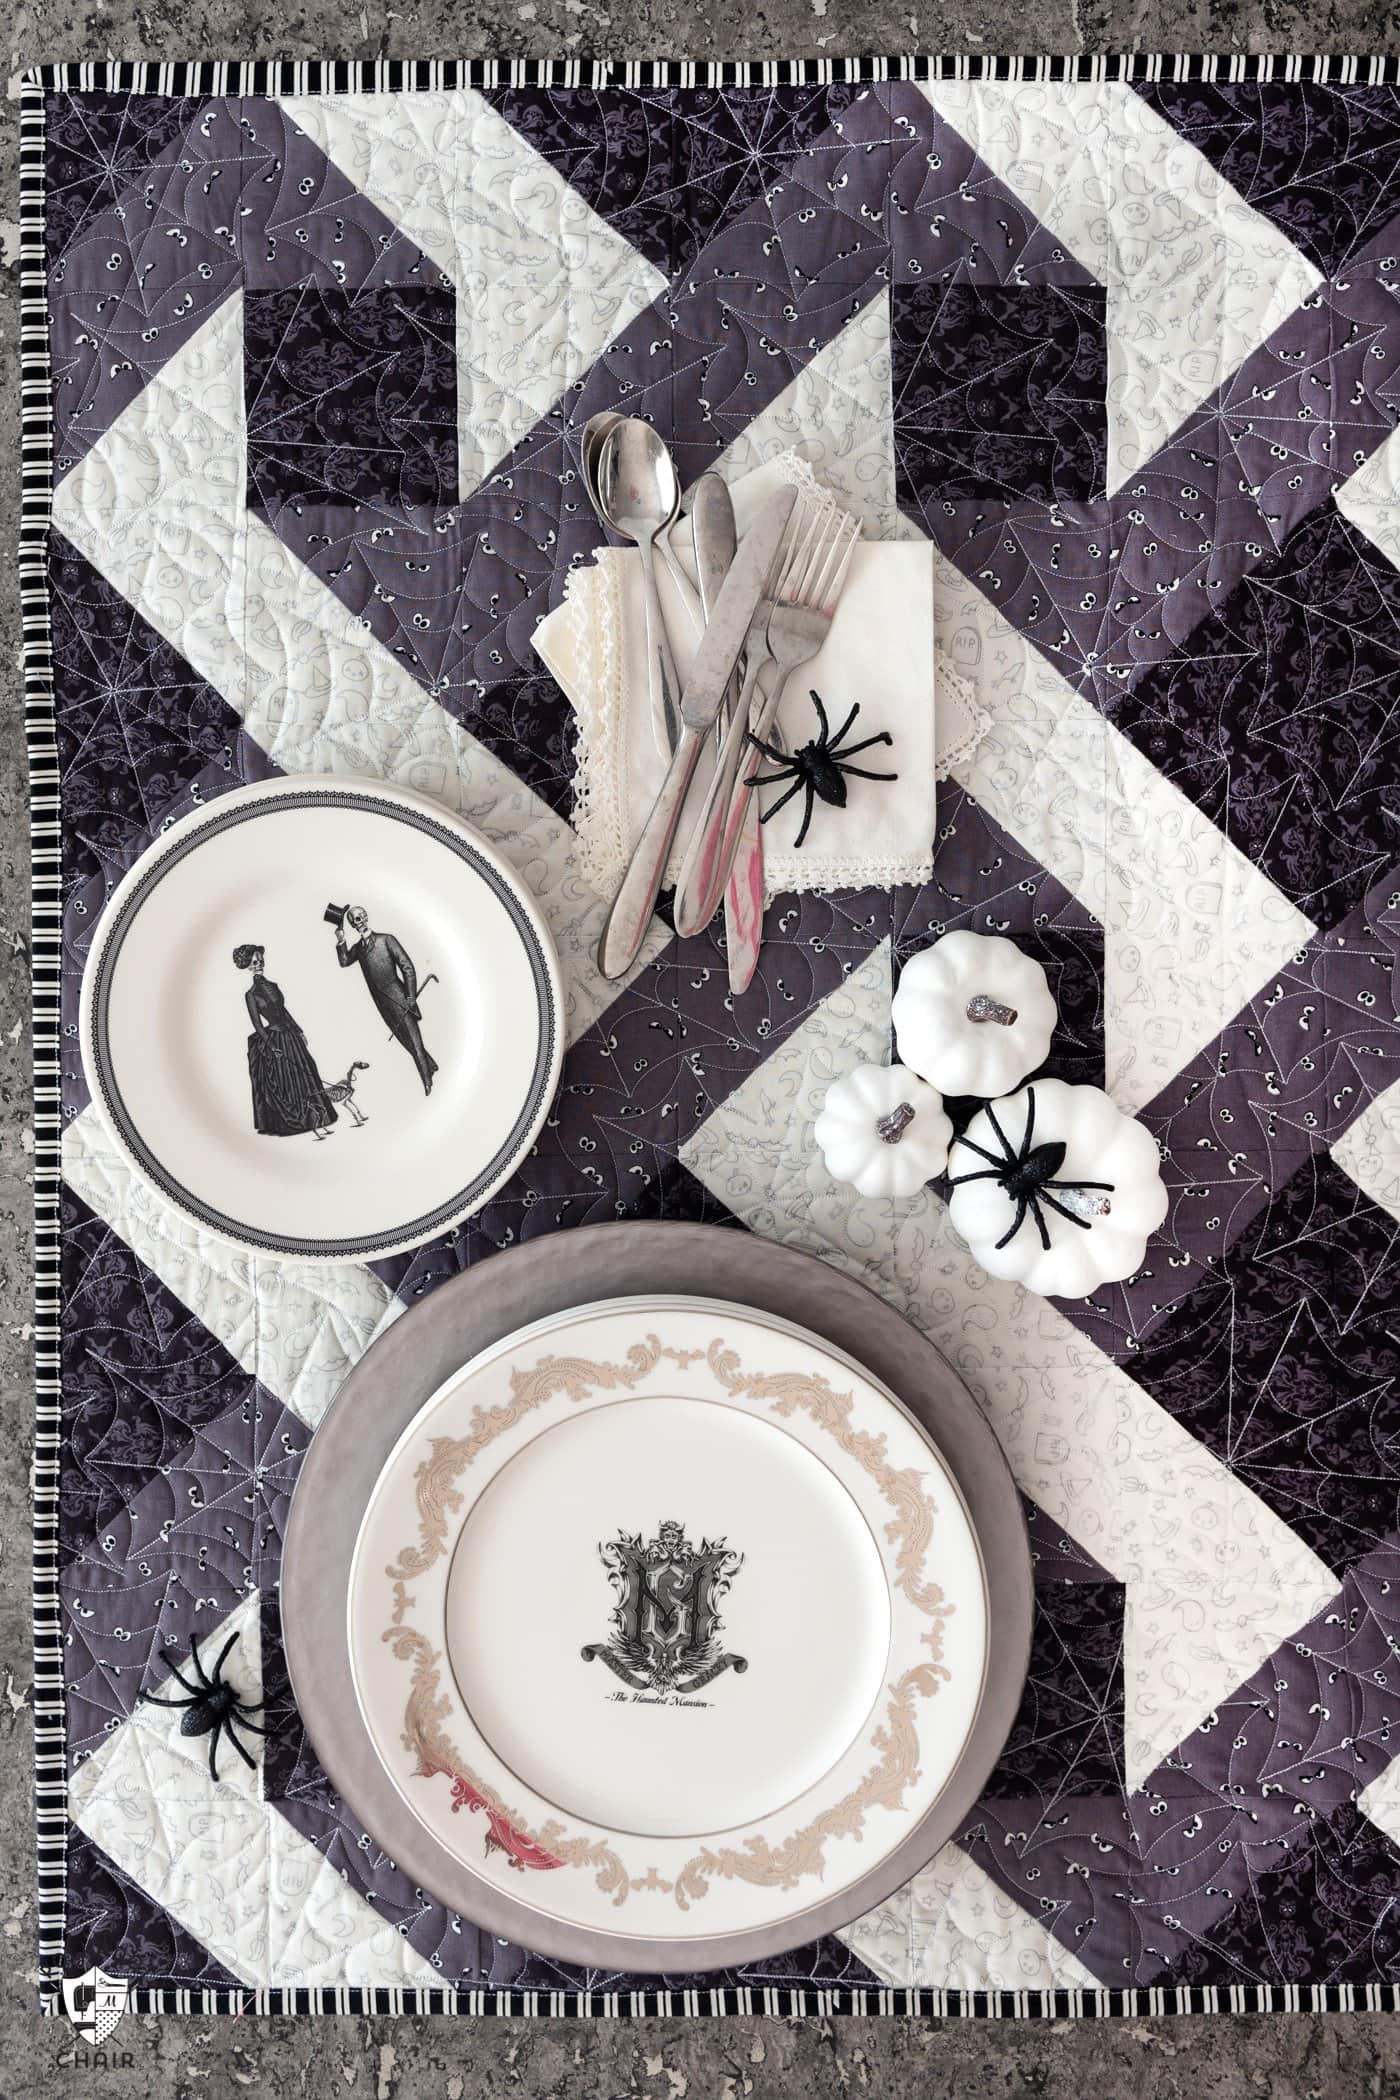 Table d'Halloween avec dessus de table matelassé gris et noir et assiettes blanches